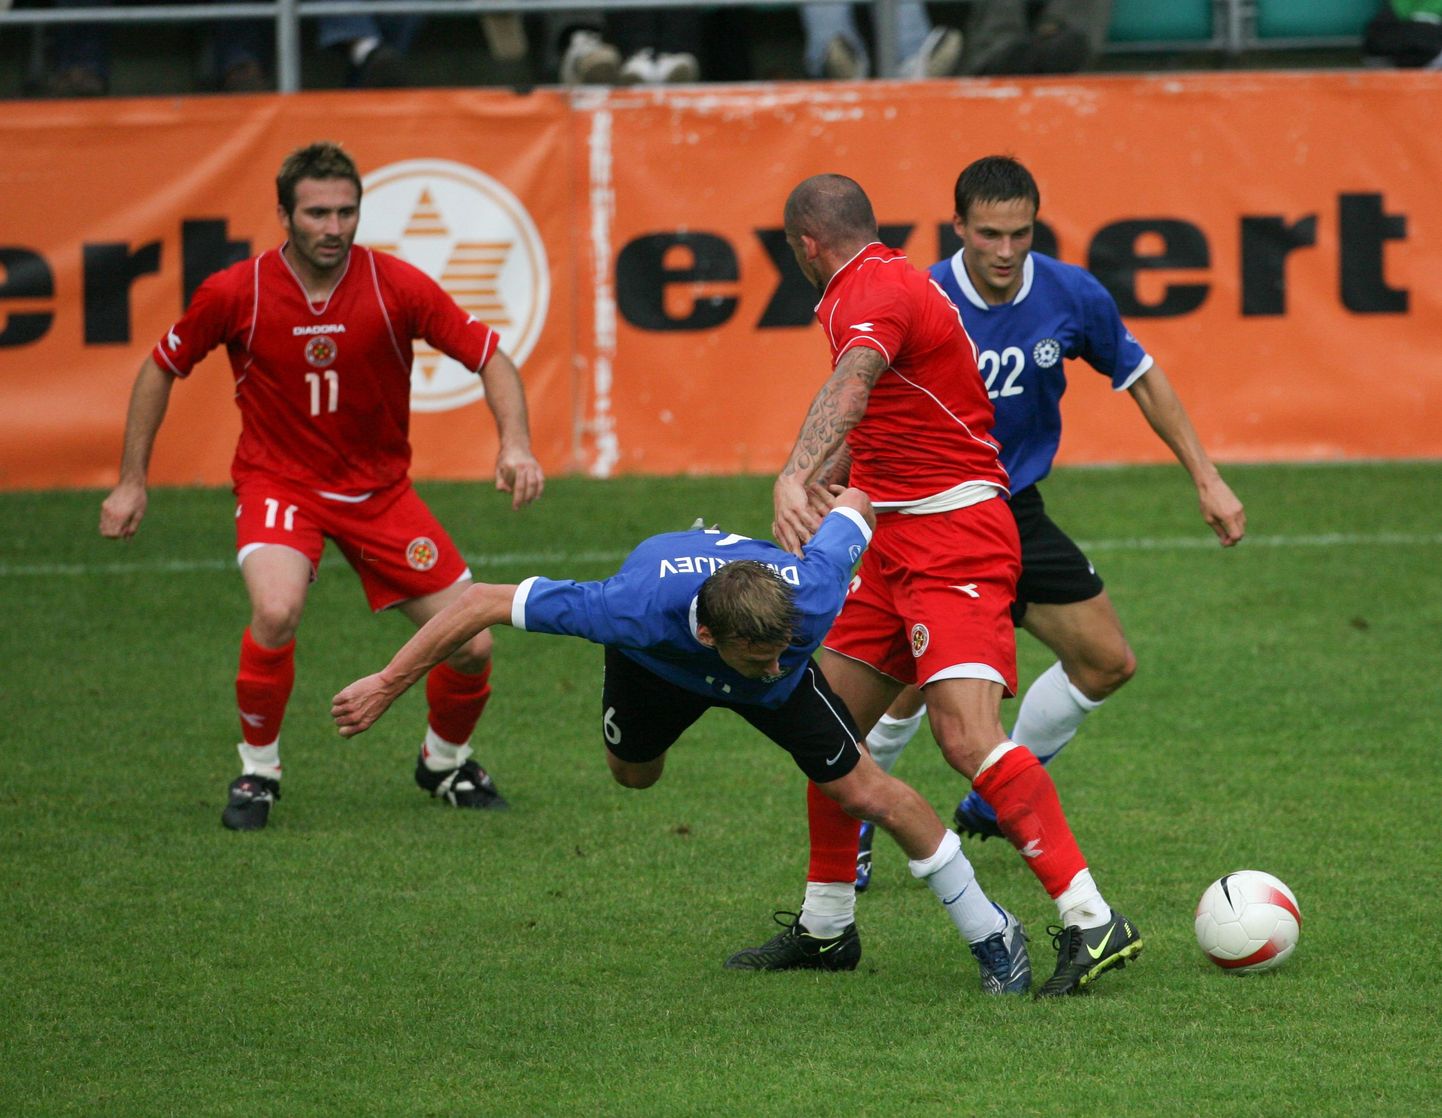 Viimati 2008. aastal Tallinnas peetud maavõistlusel Maltaga võisid eestlased rõõmustada 2:1 võidu üle.